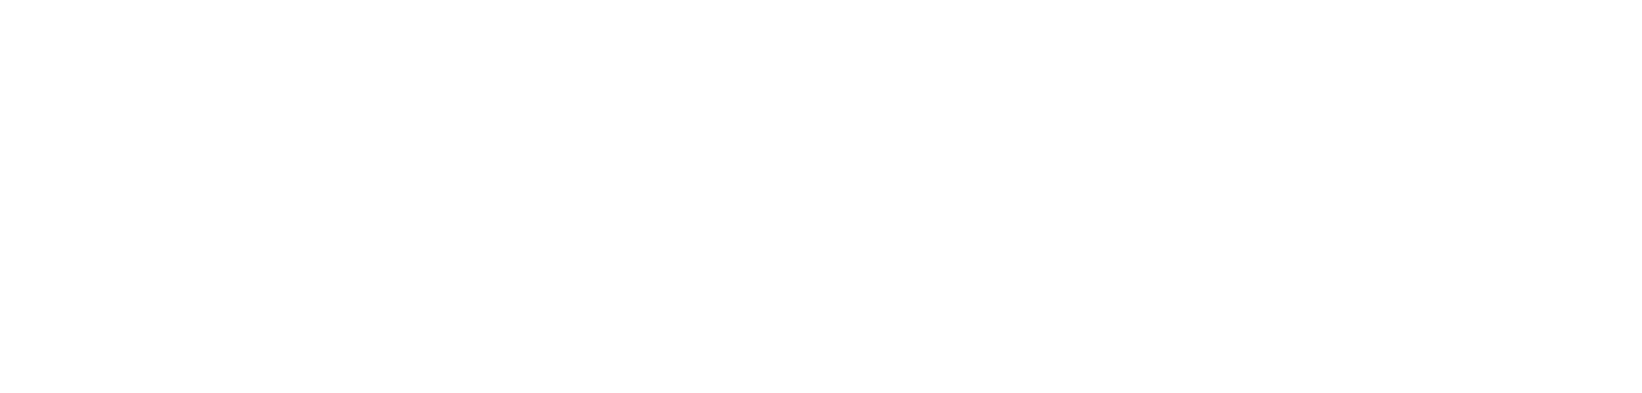 Samsara logo grand pour les fonds sombres (PNG transparent)